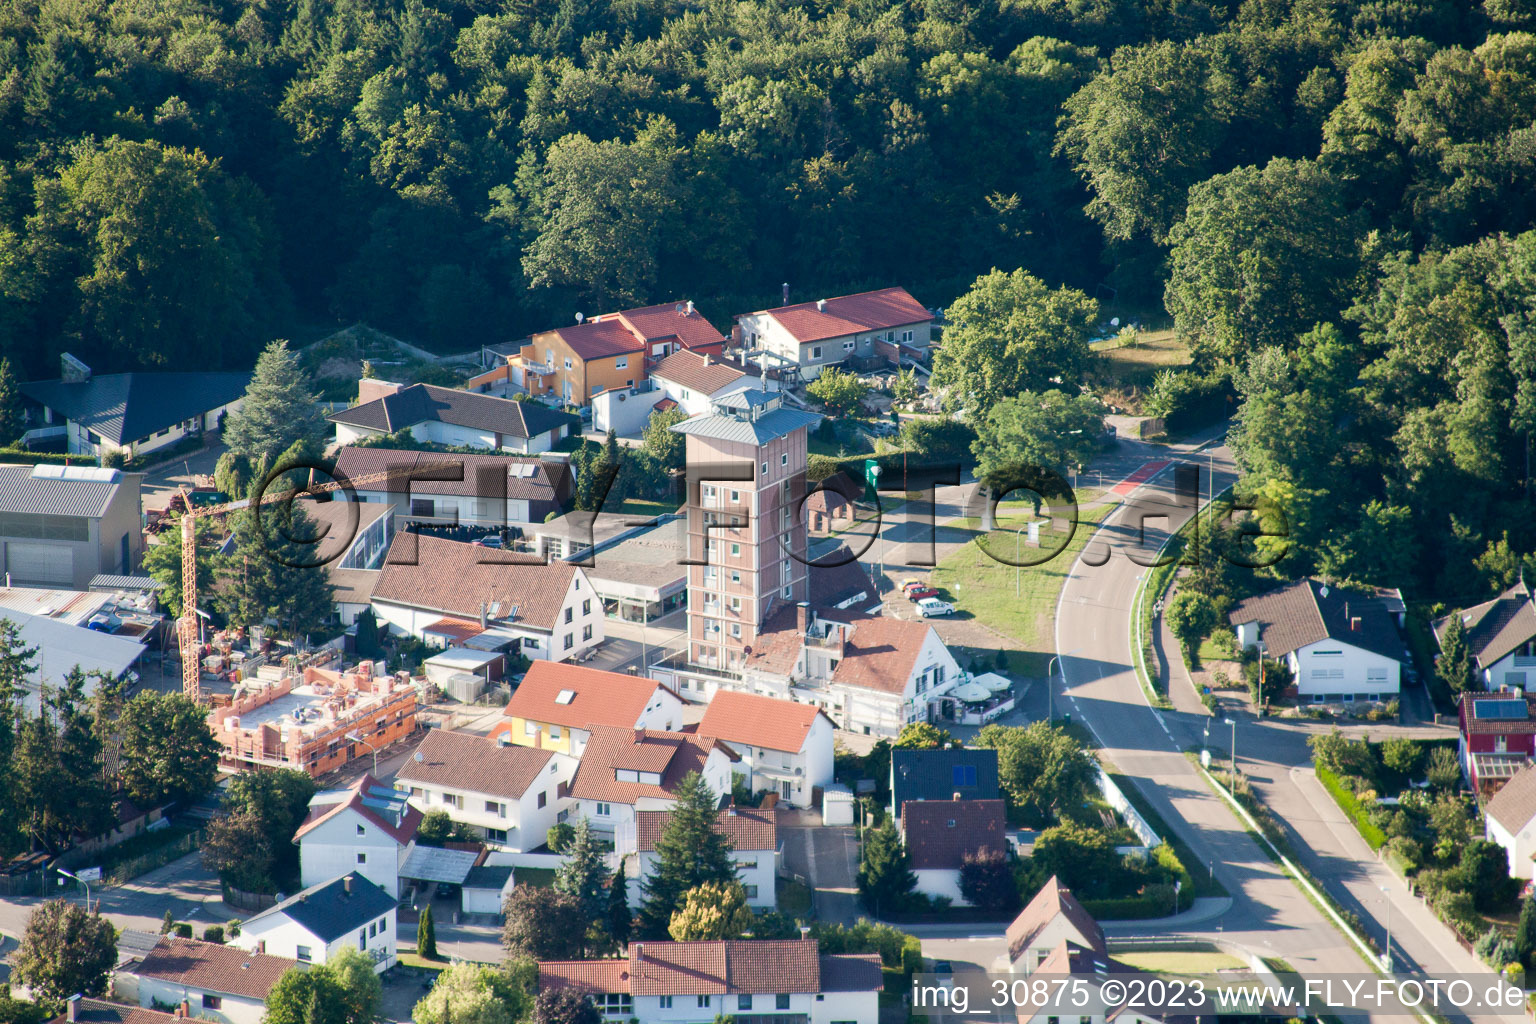 Vue aérienne de Gratte-ciel Ludovici, Maximilianstr à Jockgrim dans le département Rhénanie-Palatinat, Allemagne